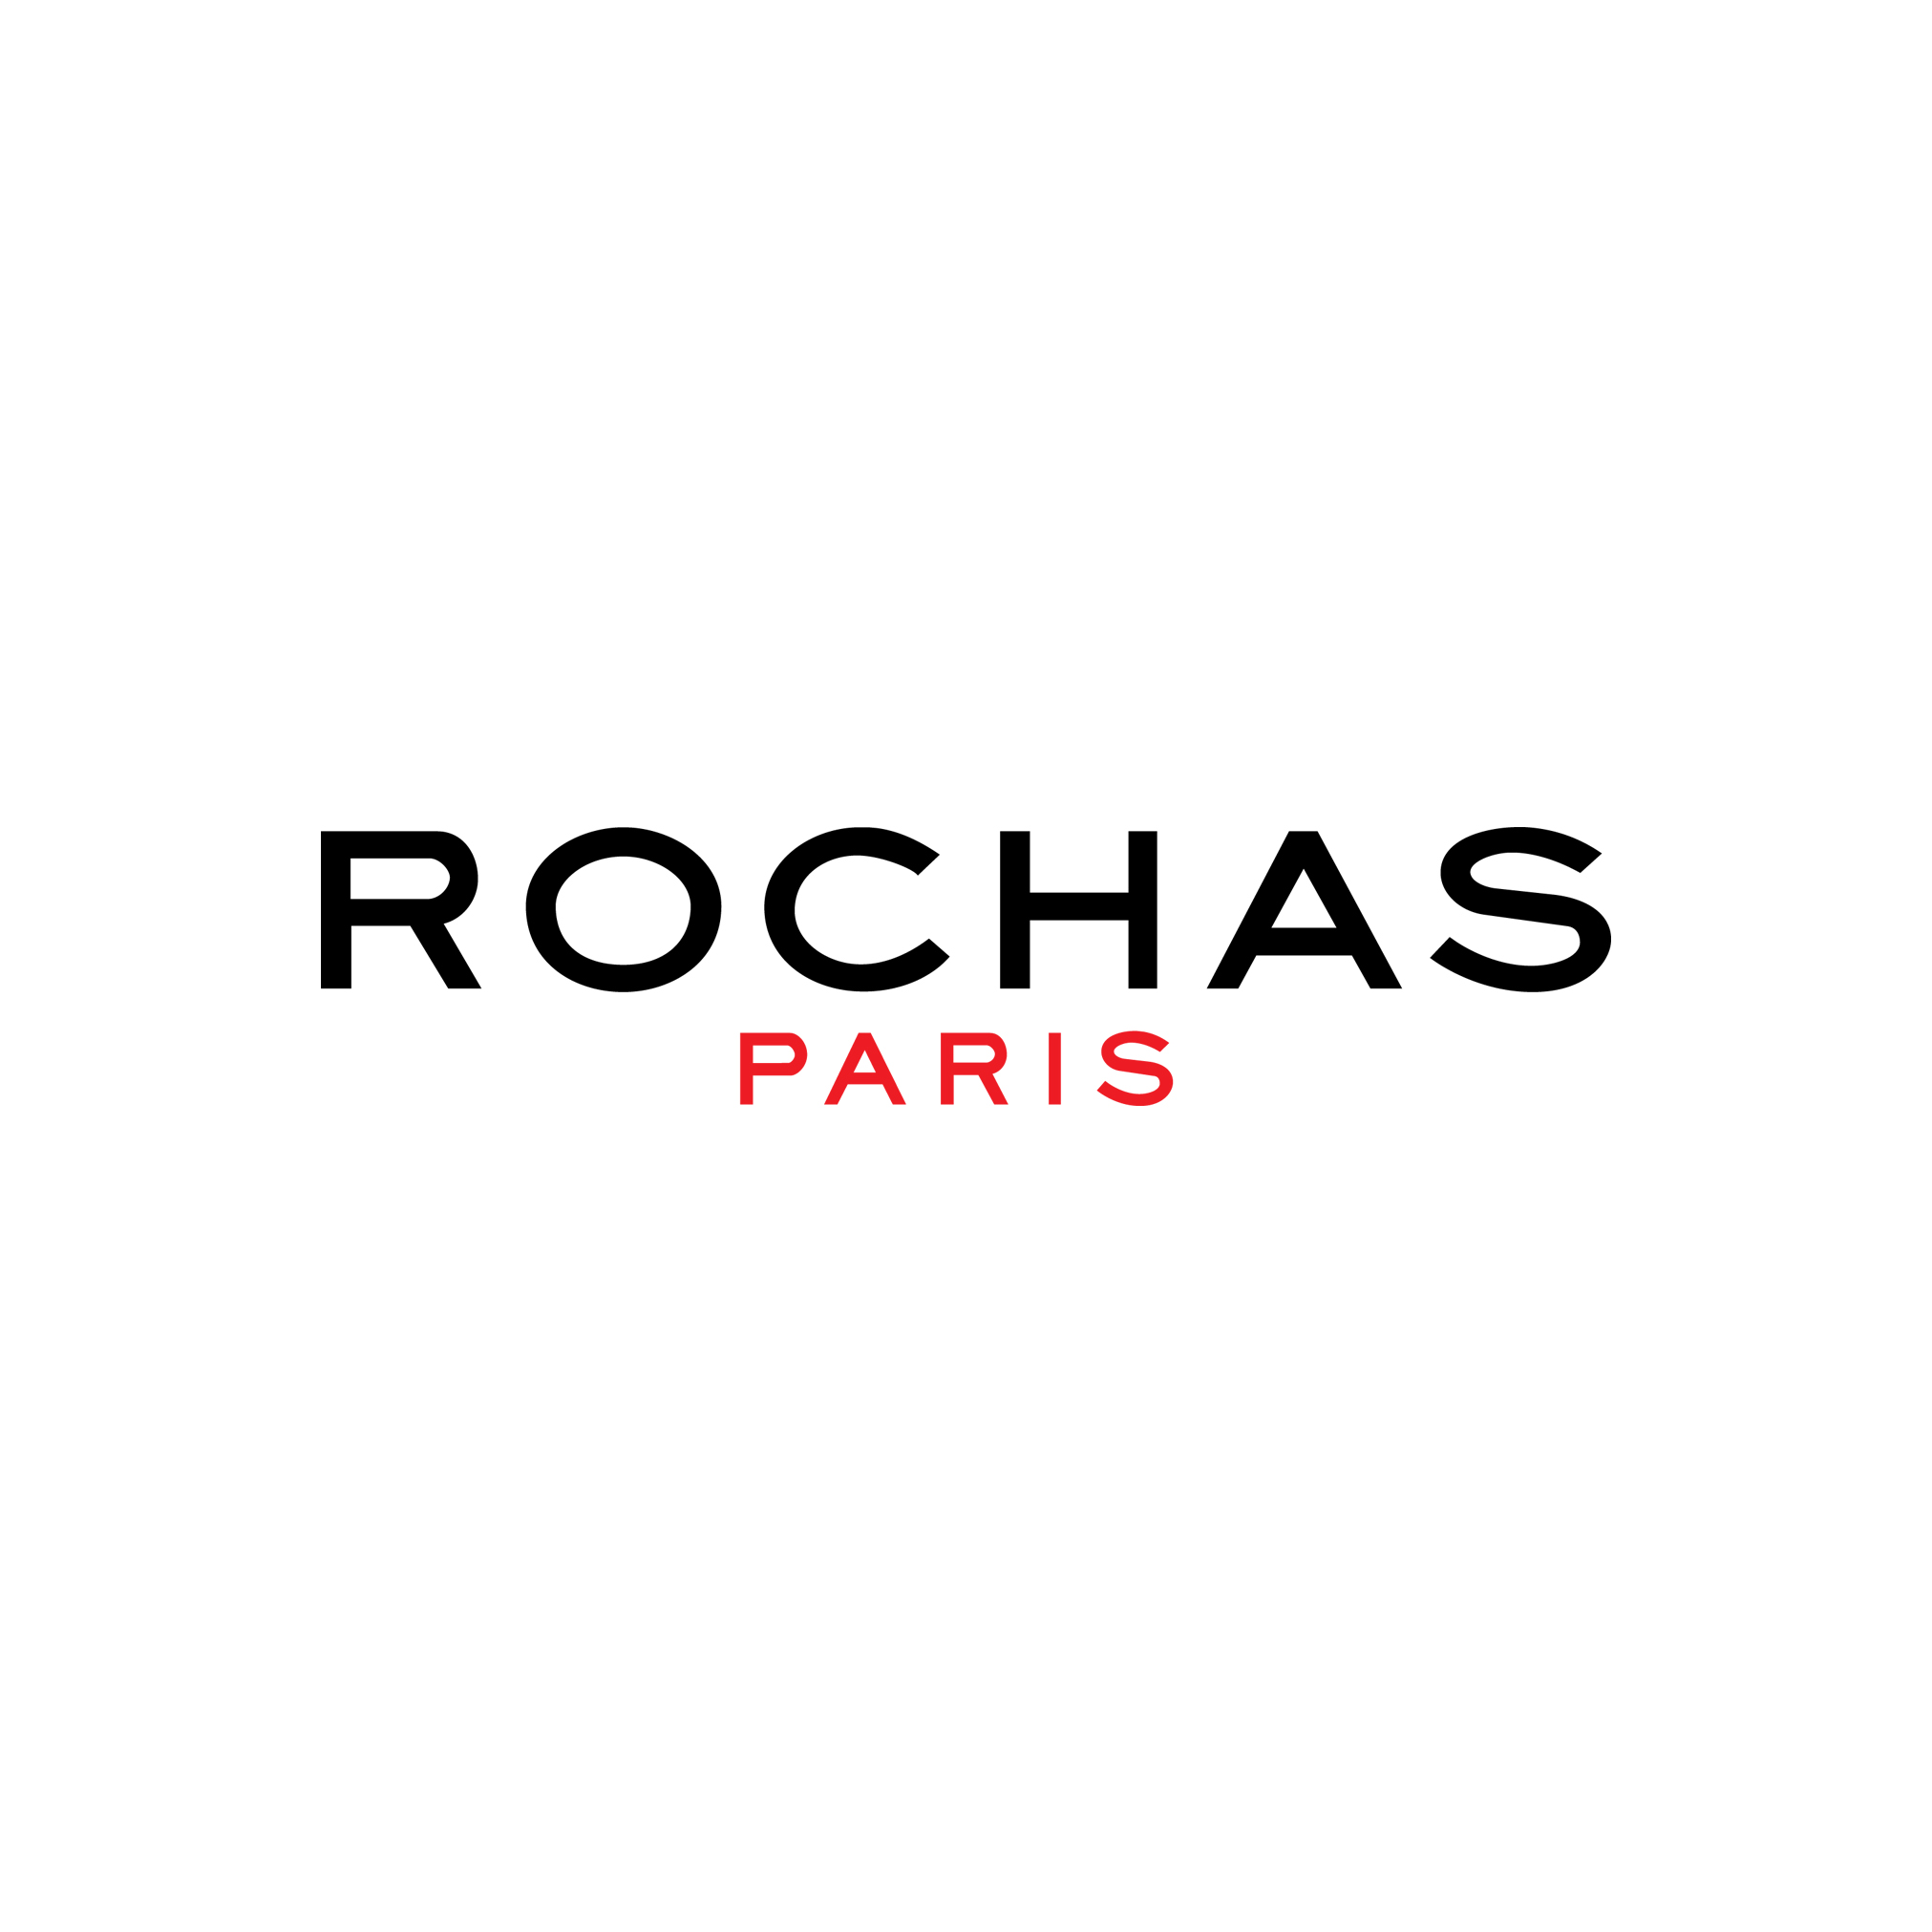 Rochas Lgoo for Website.jpg